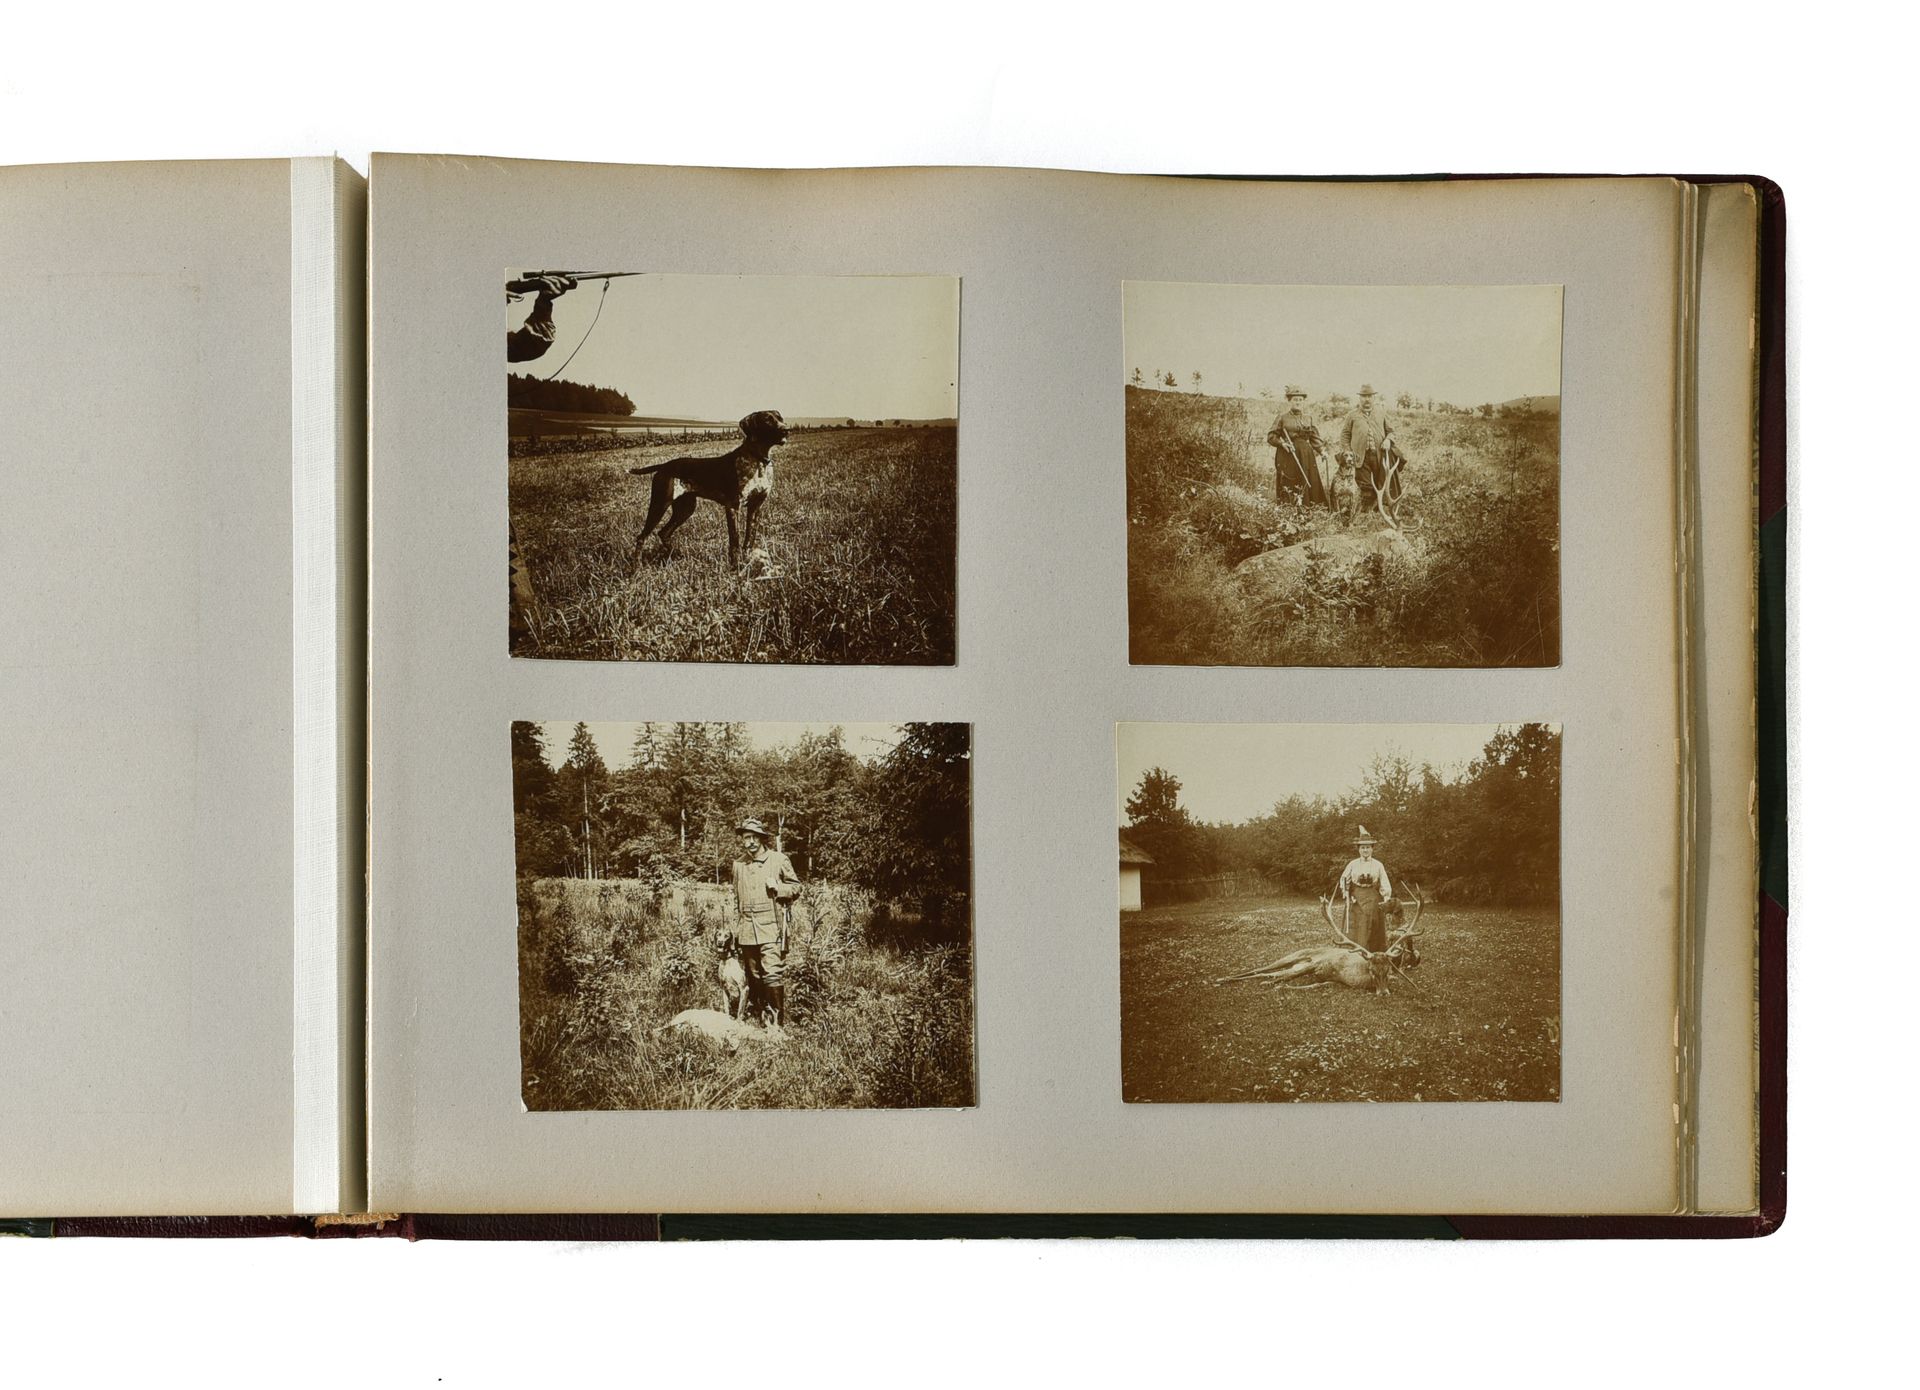 Album de photographies de chiens BÉLGICA, ALREDEDOR DE 1900

Álbum de fotografía&hellip;